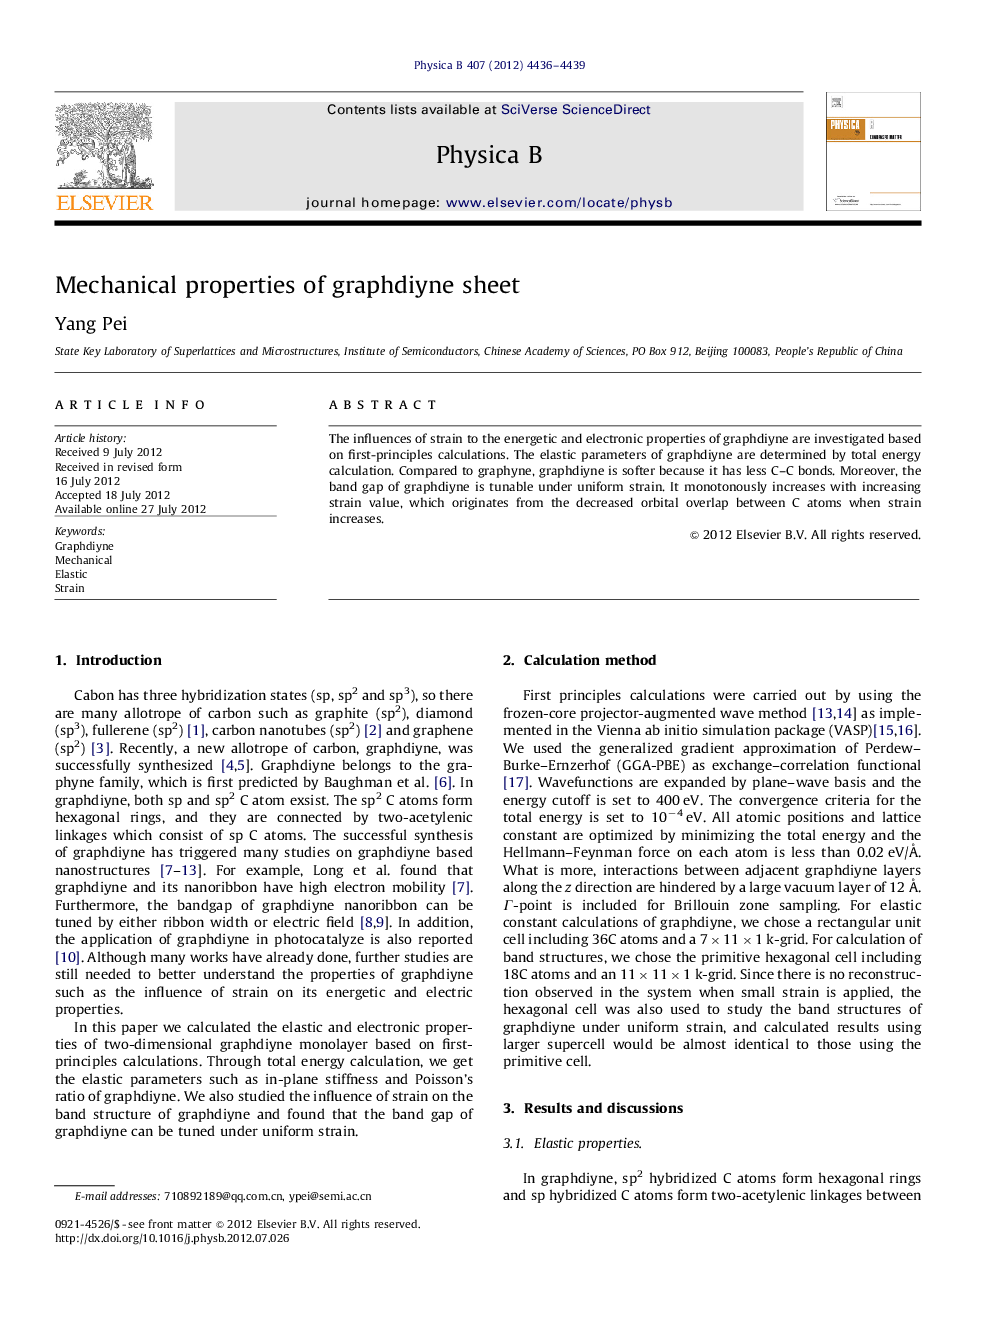 Mechanical properties of graphdiyne sheet